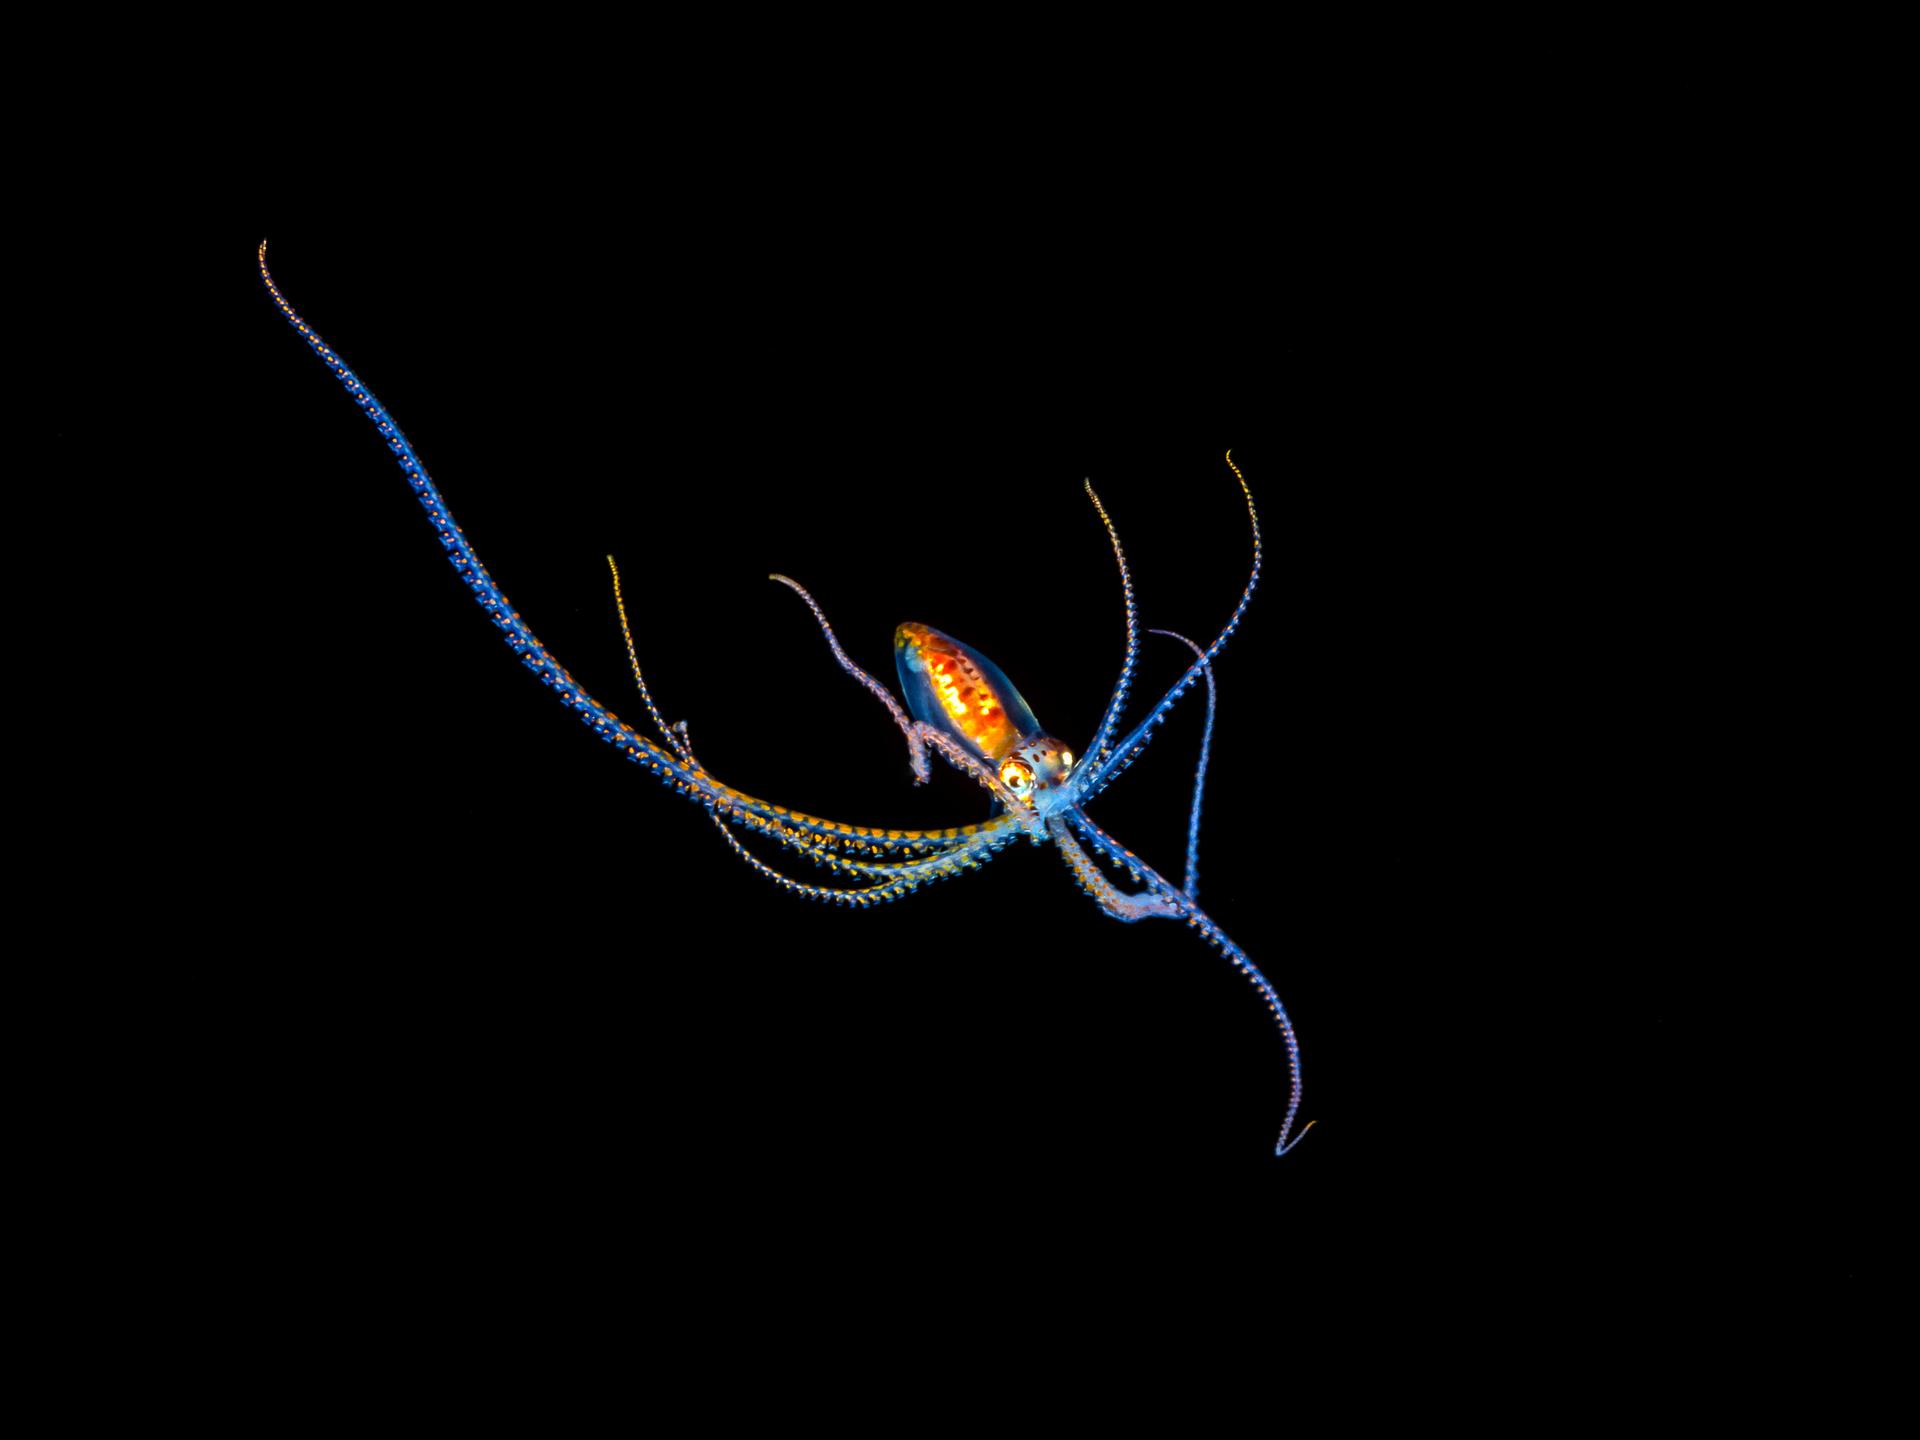 Dieses Larvenstadium eines Langarmkraken, Octopus sp., ist nicht mehr als fünf Zentimeter groß (wie abgebildet) und wurde nachts einige Meilen vor der Küste von Kona während eines Tauchgangs fotografiert.